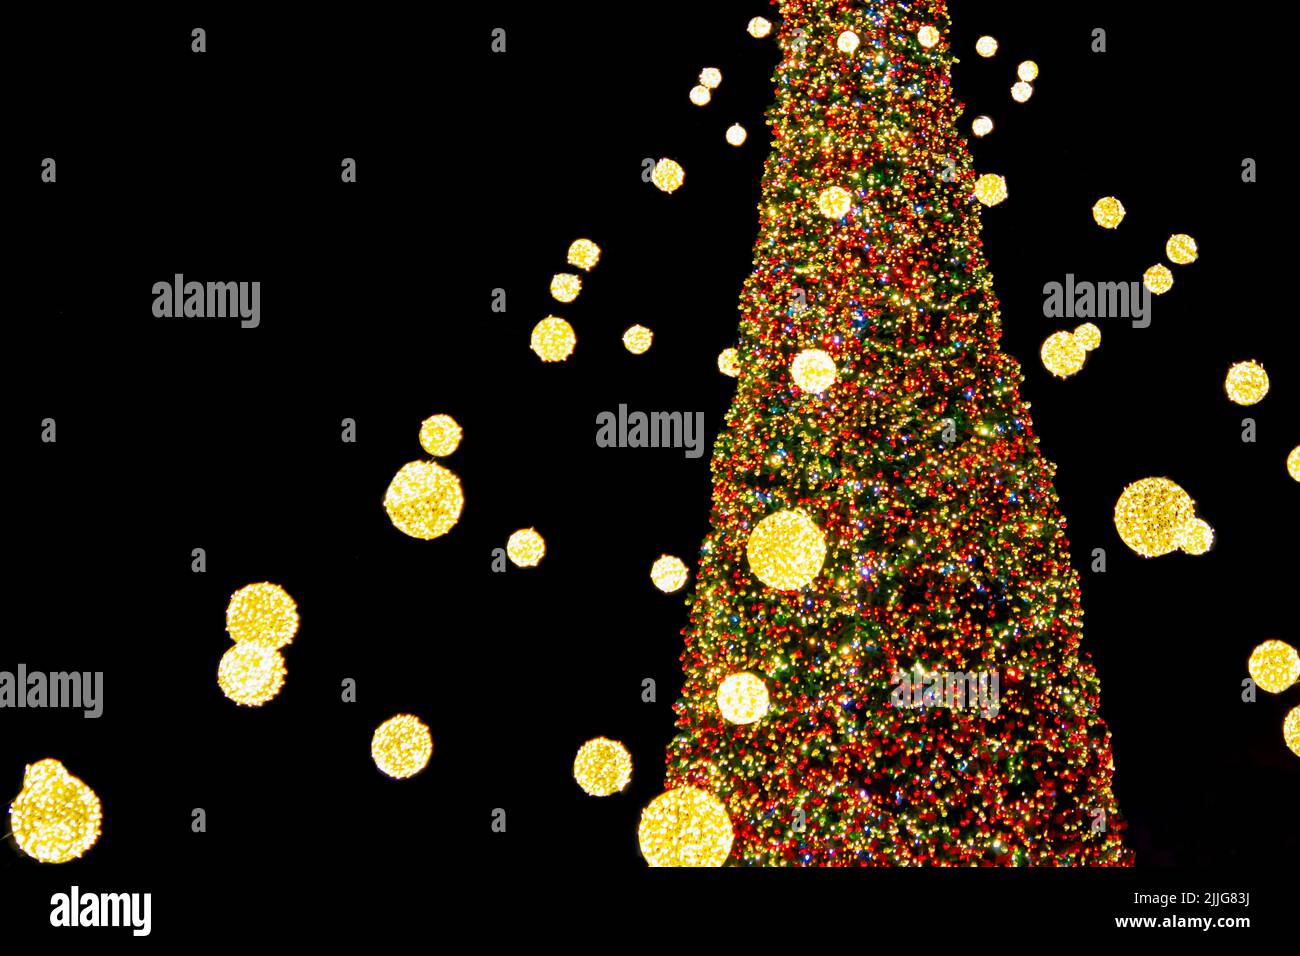 Magnifique arbre de Noël et arbre du nouvel an décoré de guirlandes et lumières multicolores la nuit. Arbre de Noël avec lumières clignotantes. Nouvel an et vacances de Noël Banque D'Images